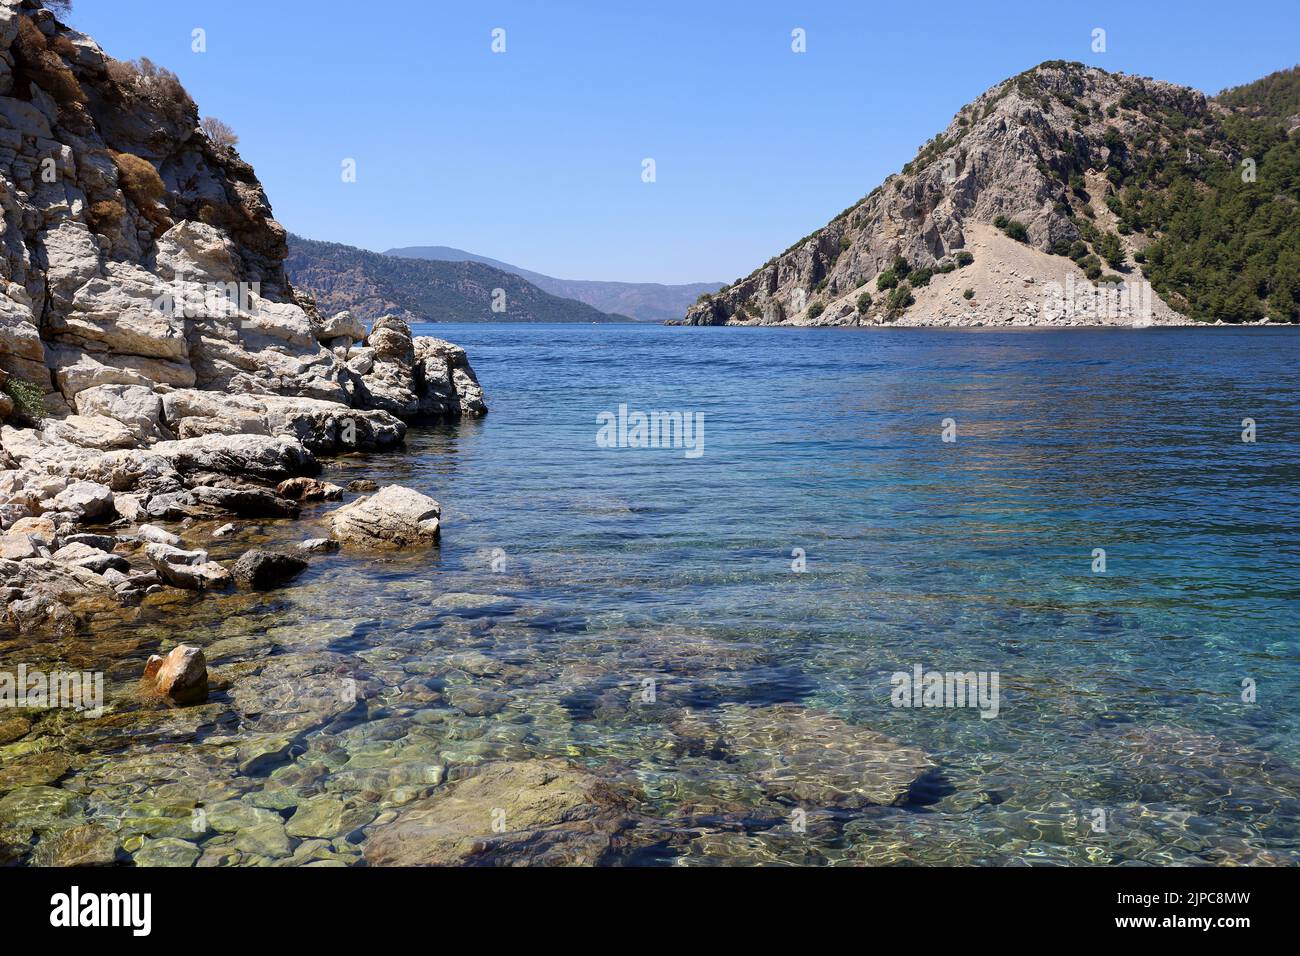 Vue pittoresque sur l'île aux rochers dans la mer Méditerranée. Côte d'été avec eau turquoise transparente, pierres sur un fond et montagnes vertes Banque D'Images